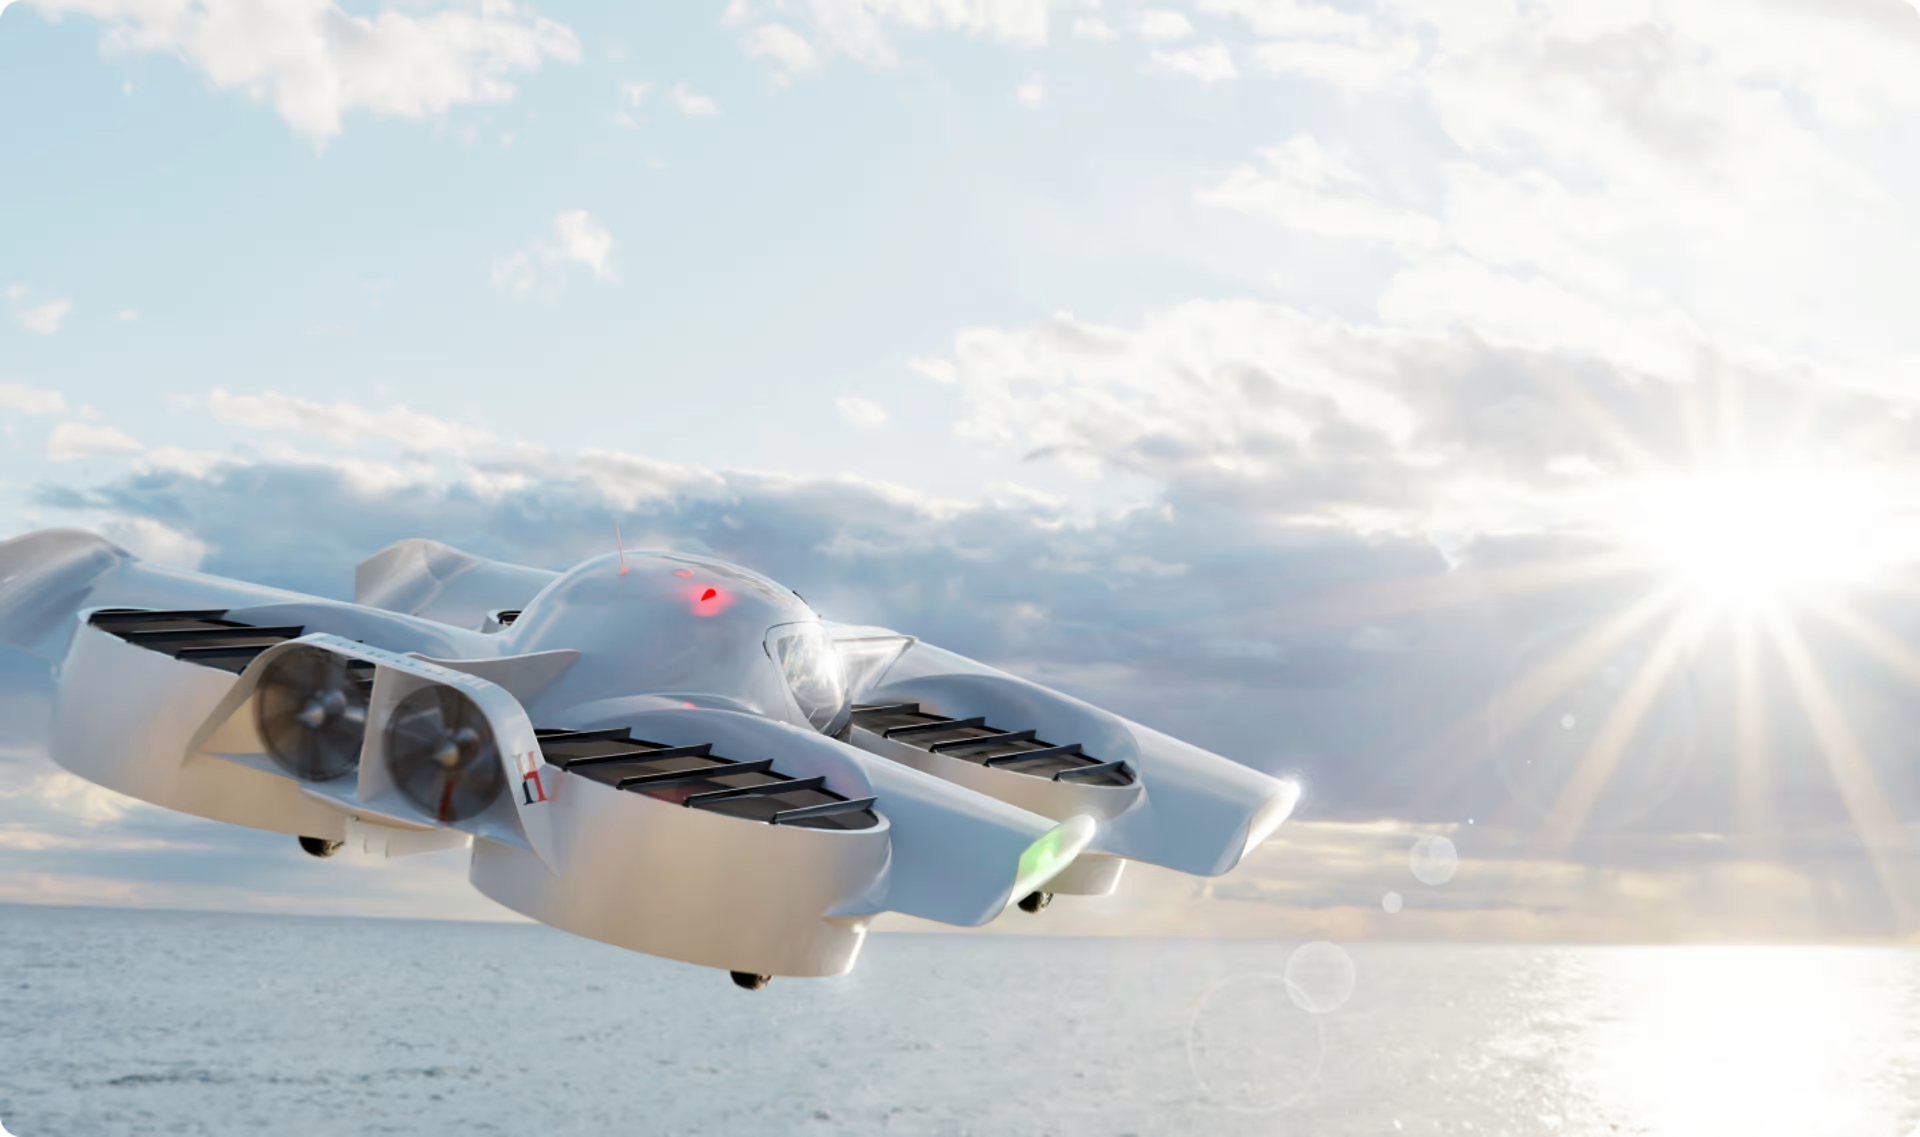 Doroni a ouvert la porte aux précommandes pour un avion électrique H1 coûtant à partir de 150 000 $ - un avion biplace avec une vitesse maximale de 225 km / h et une autonomie de 100 km.